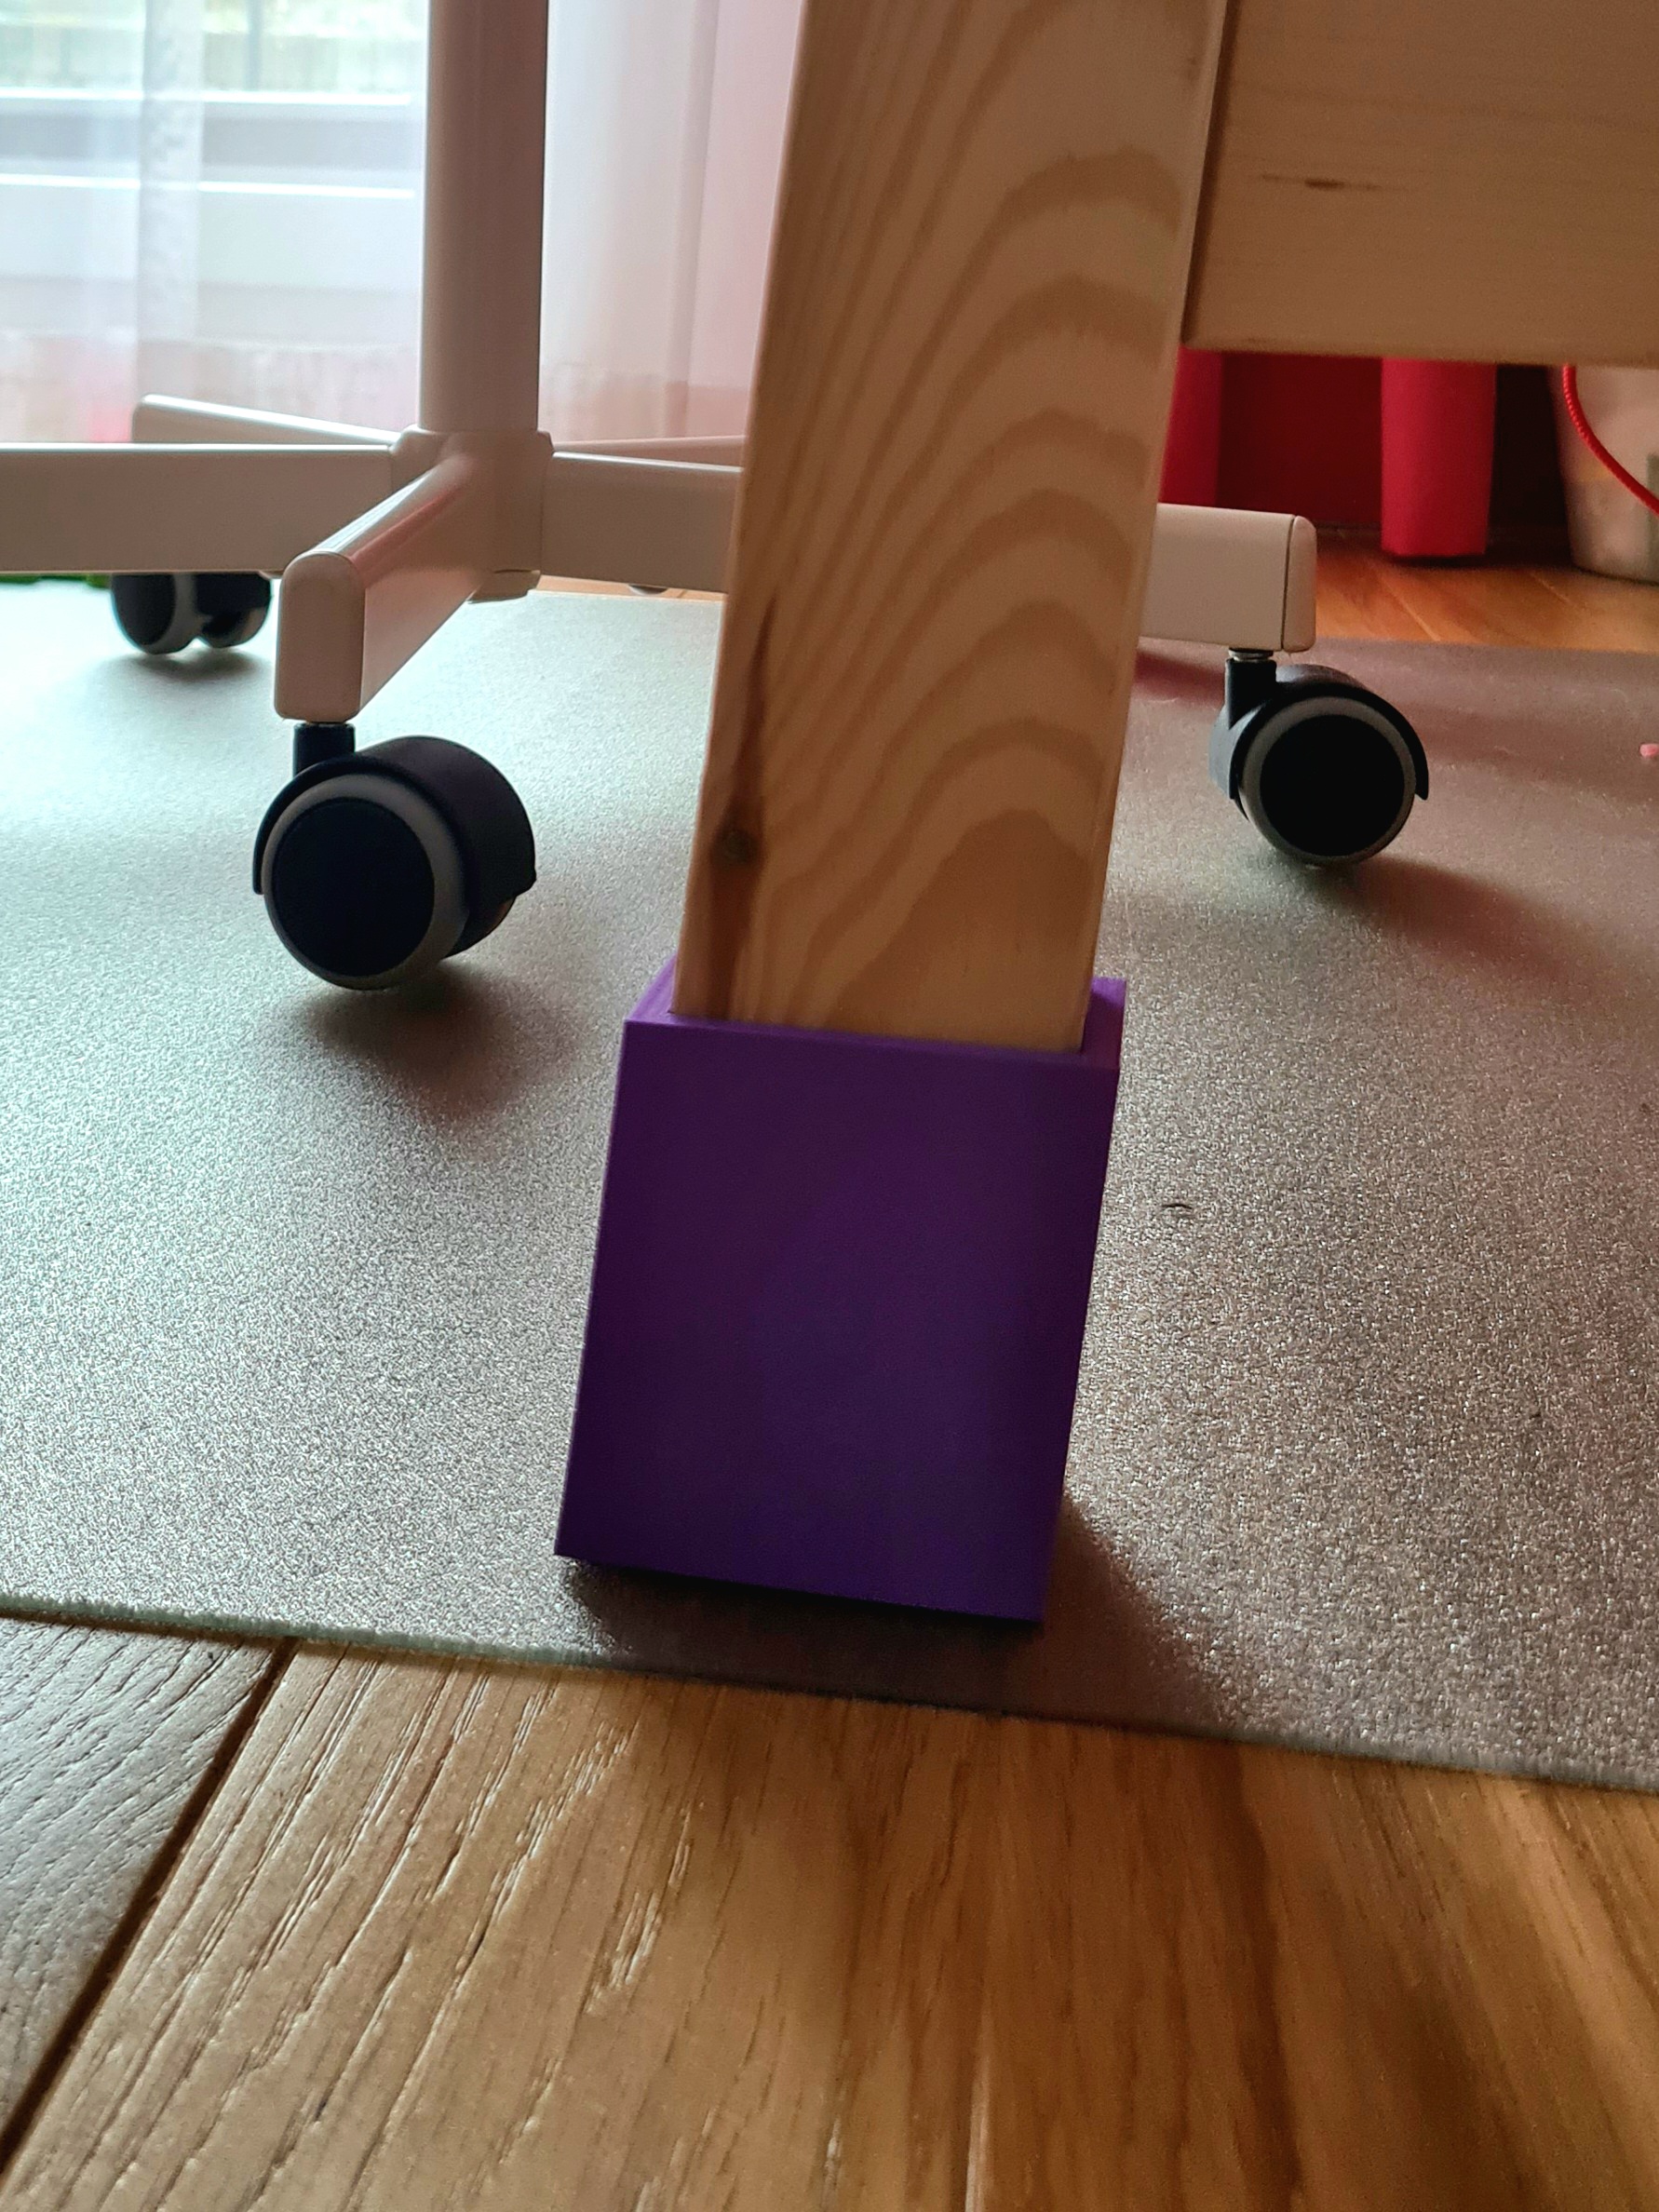 Leg extension for IKEA FLISAT children's desk